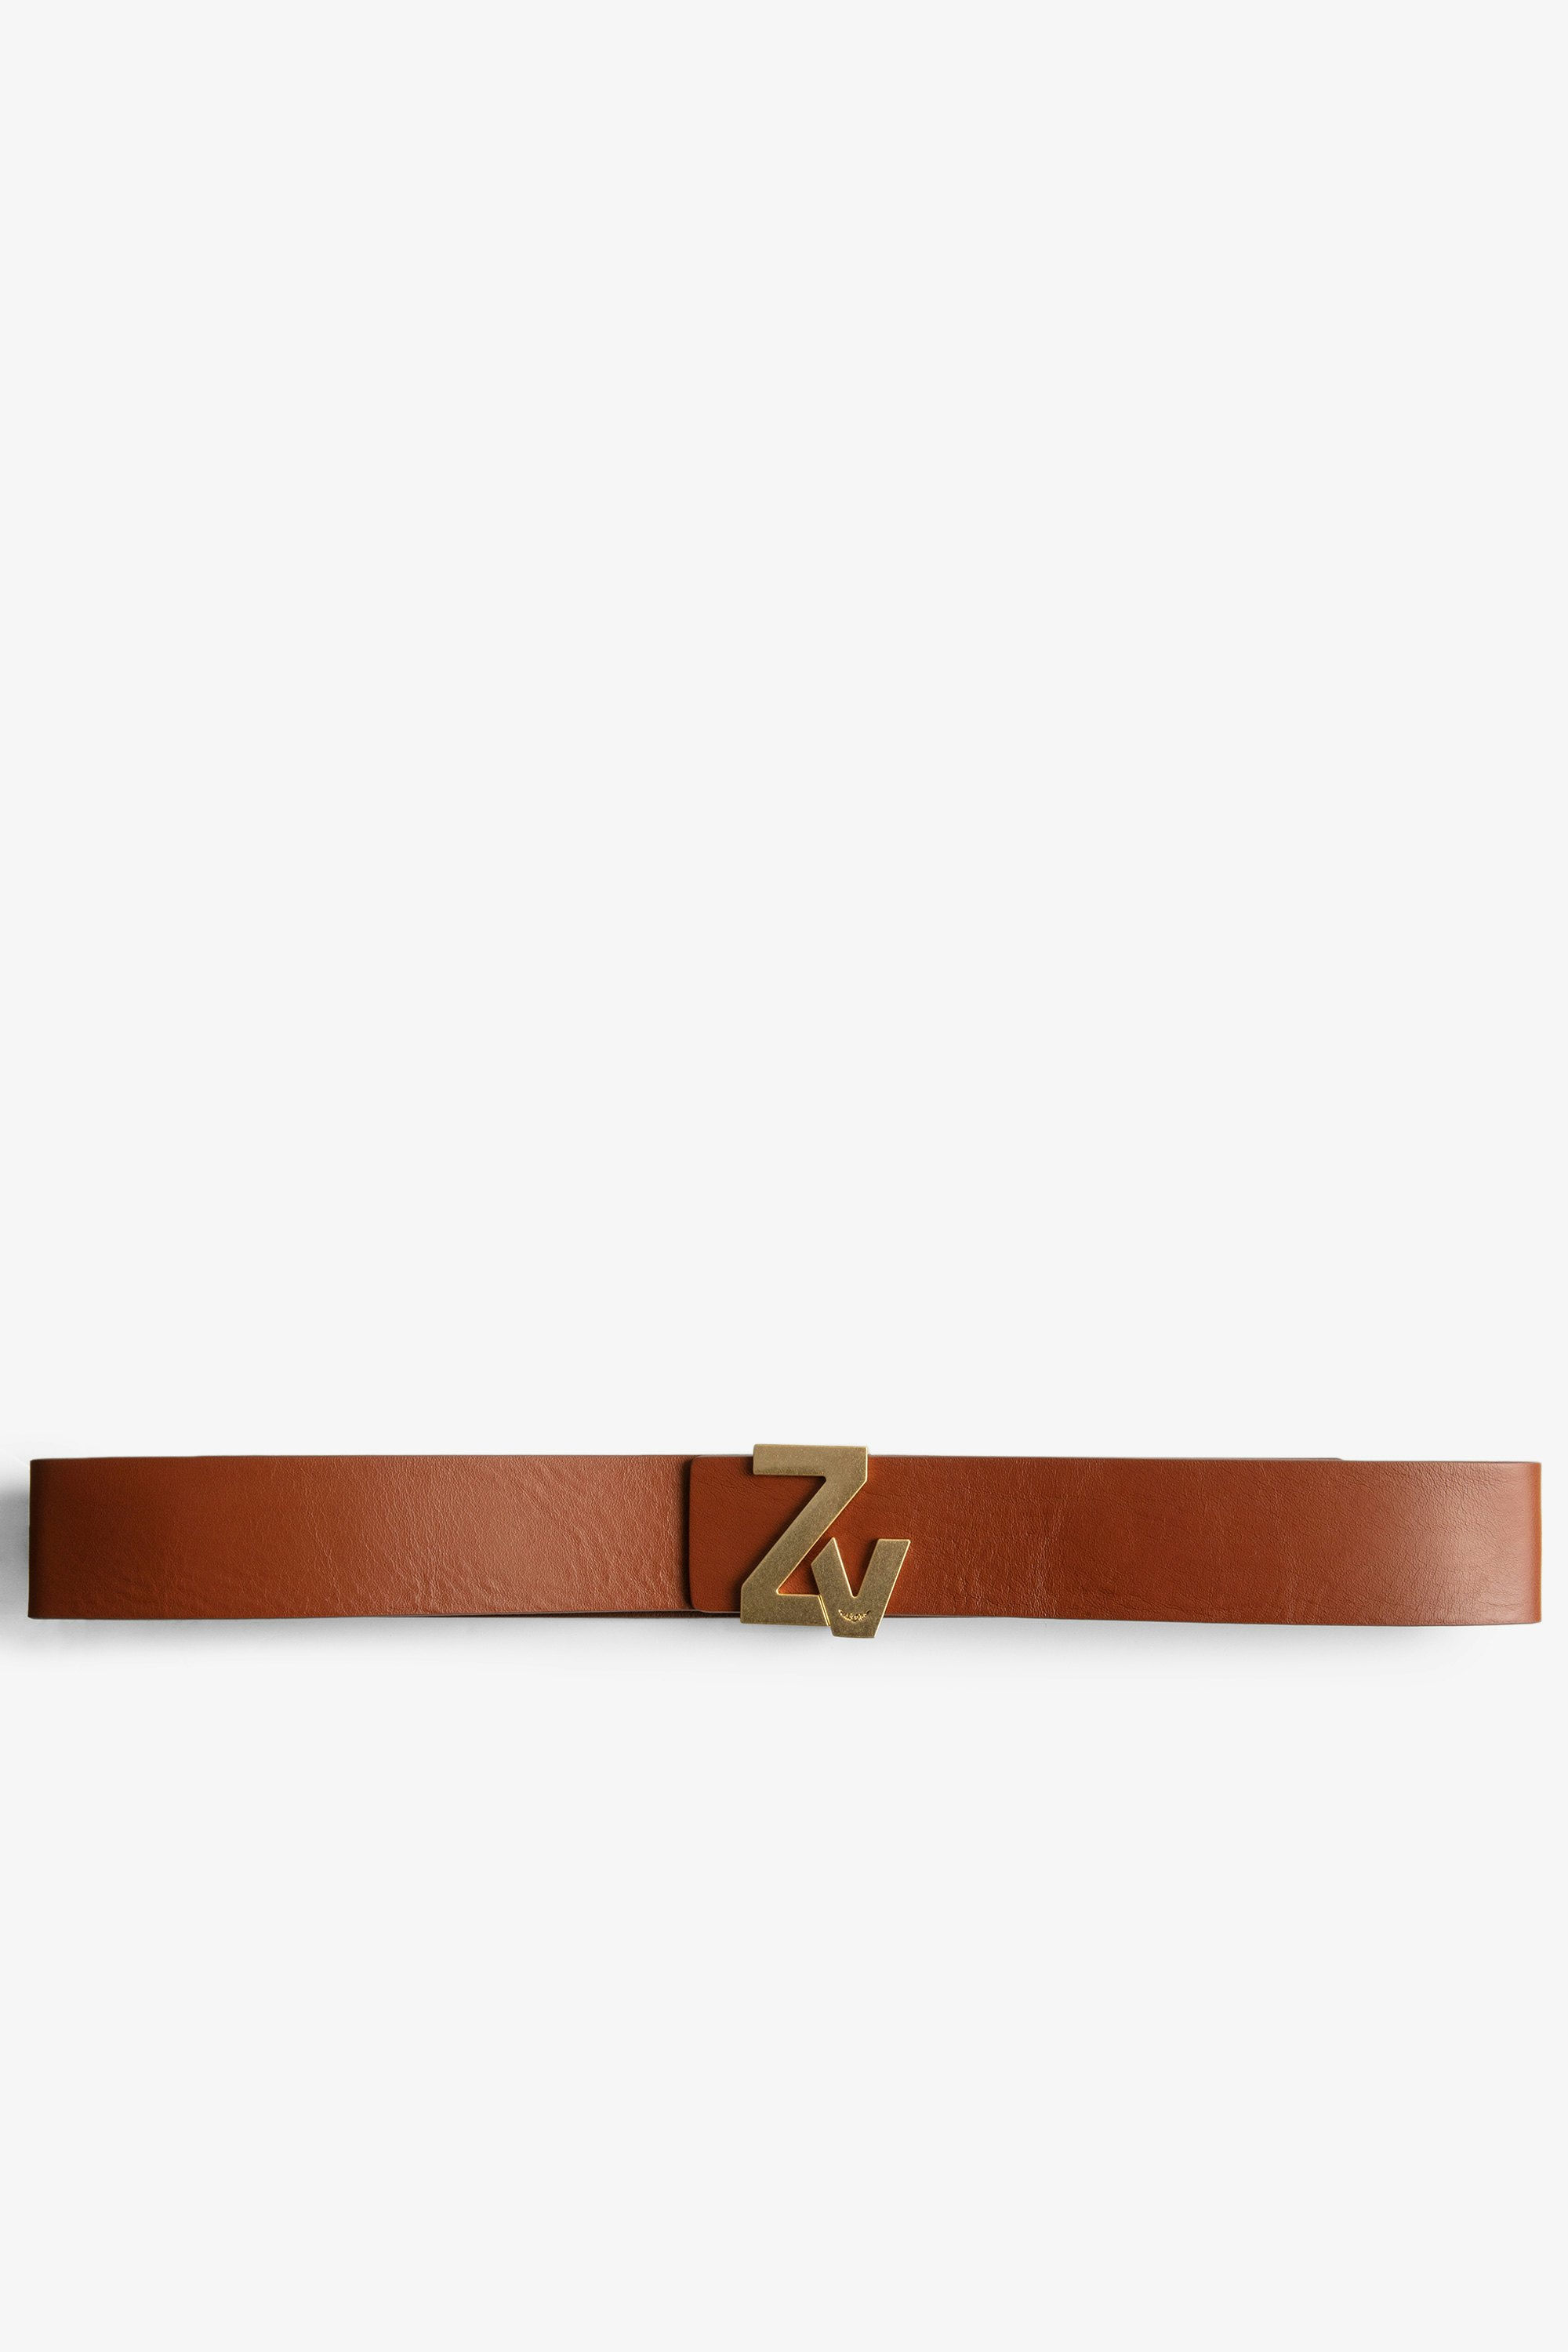 La Belt ZV Initiale Belt Leather Women’s ZV Initiale brown leather belt